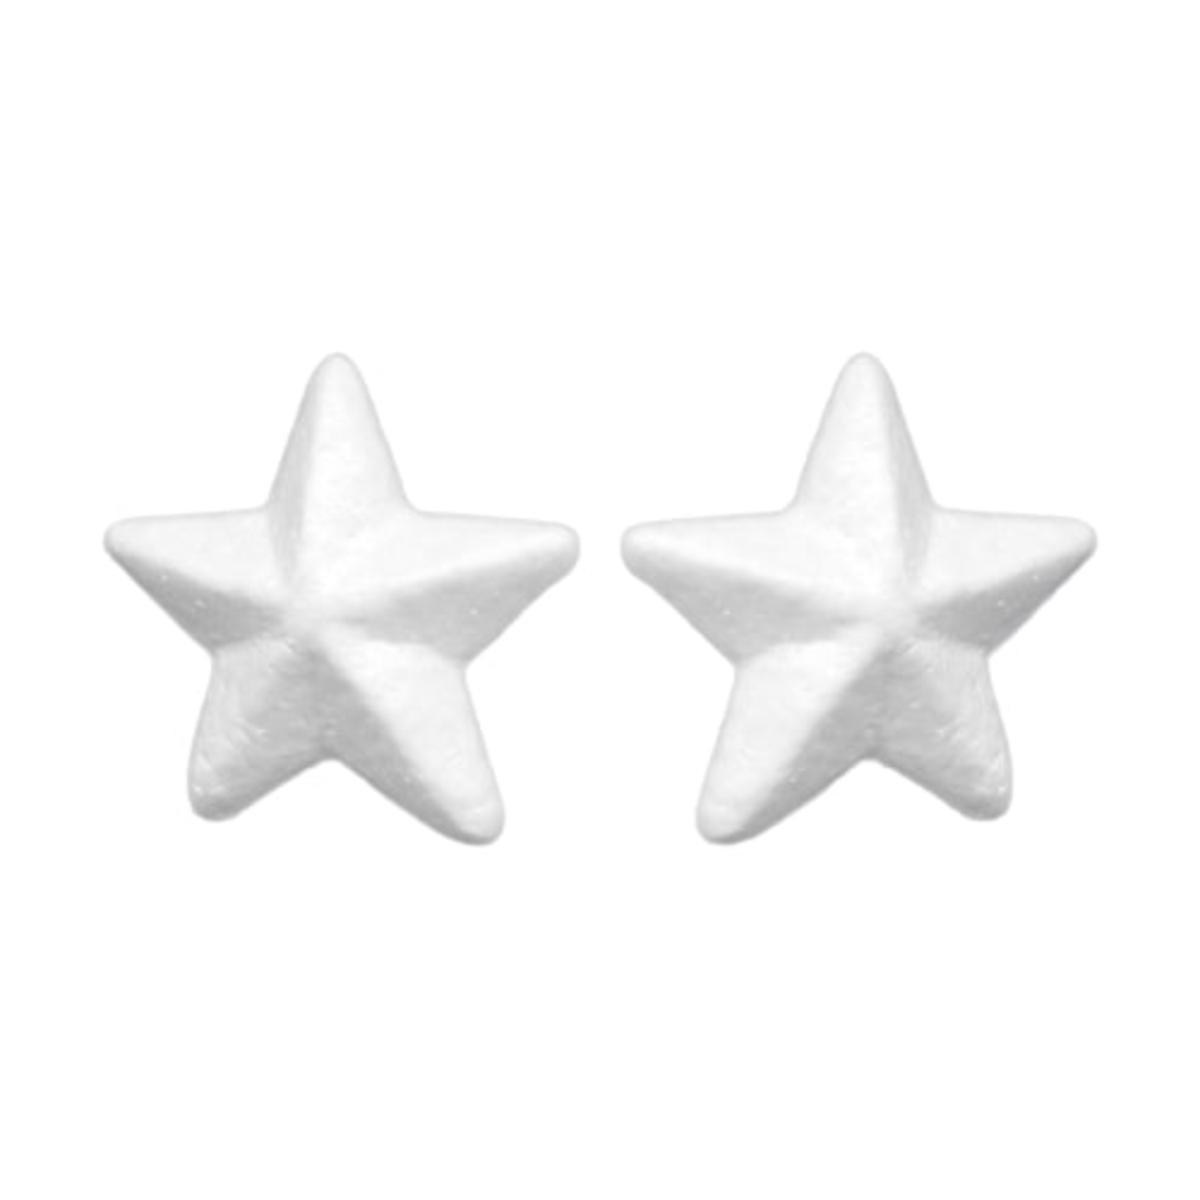 2 étoiles en polystyrène